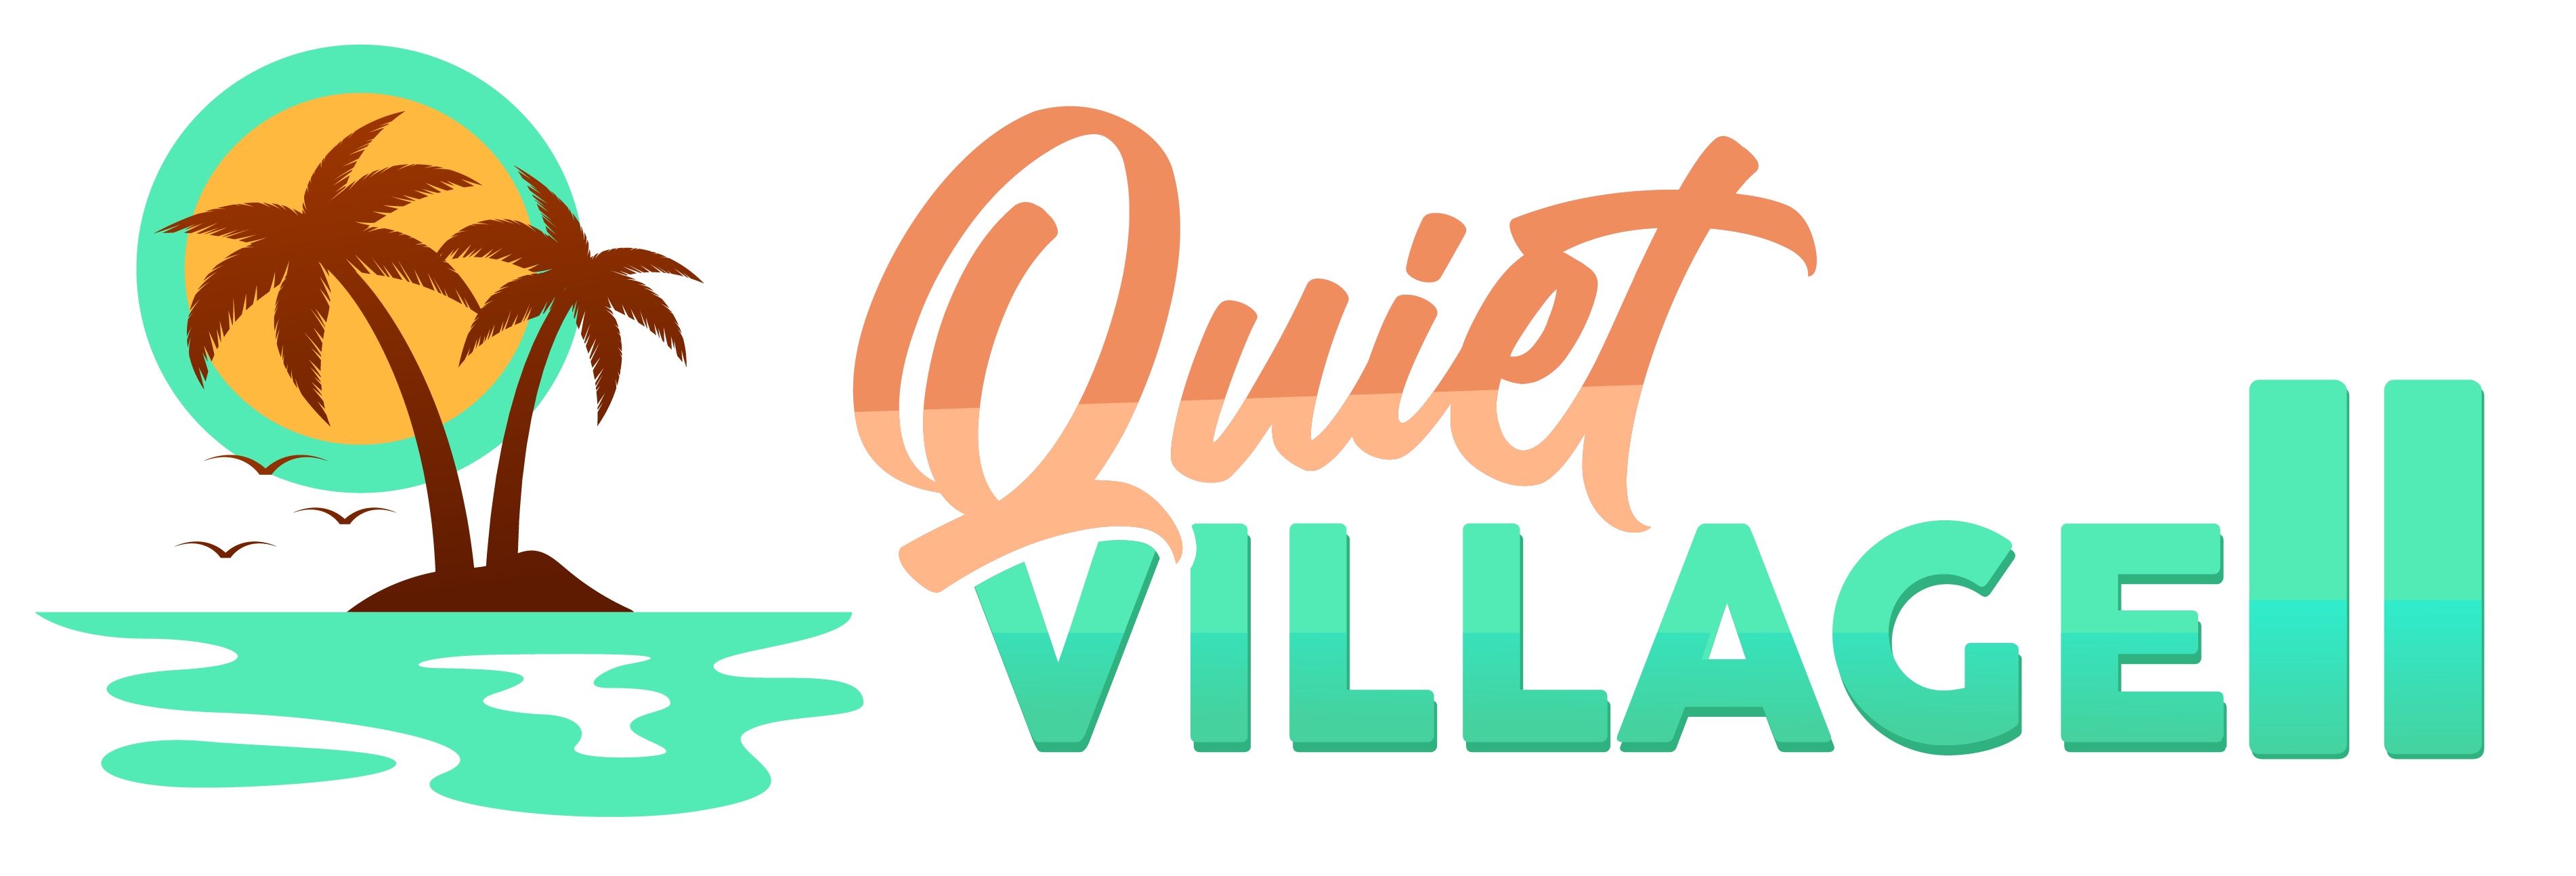 Quiet Village II